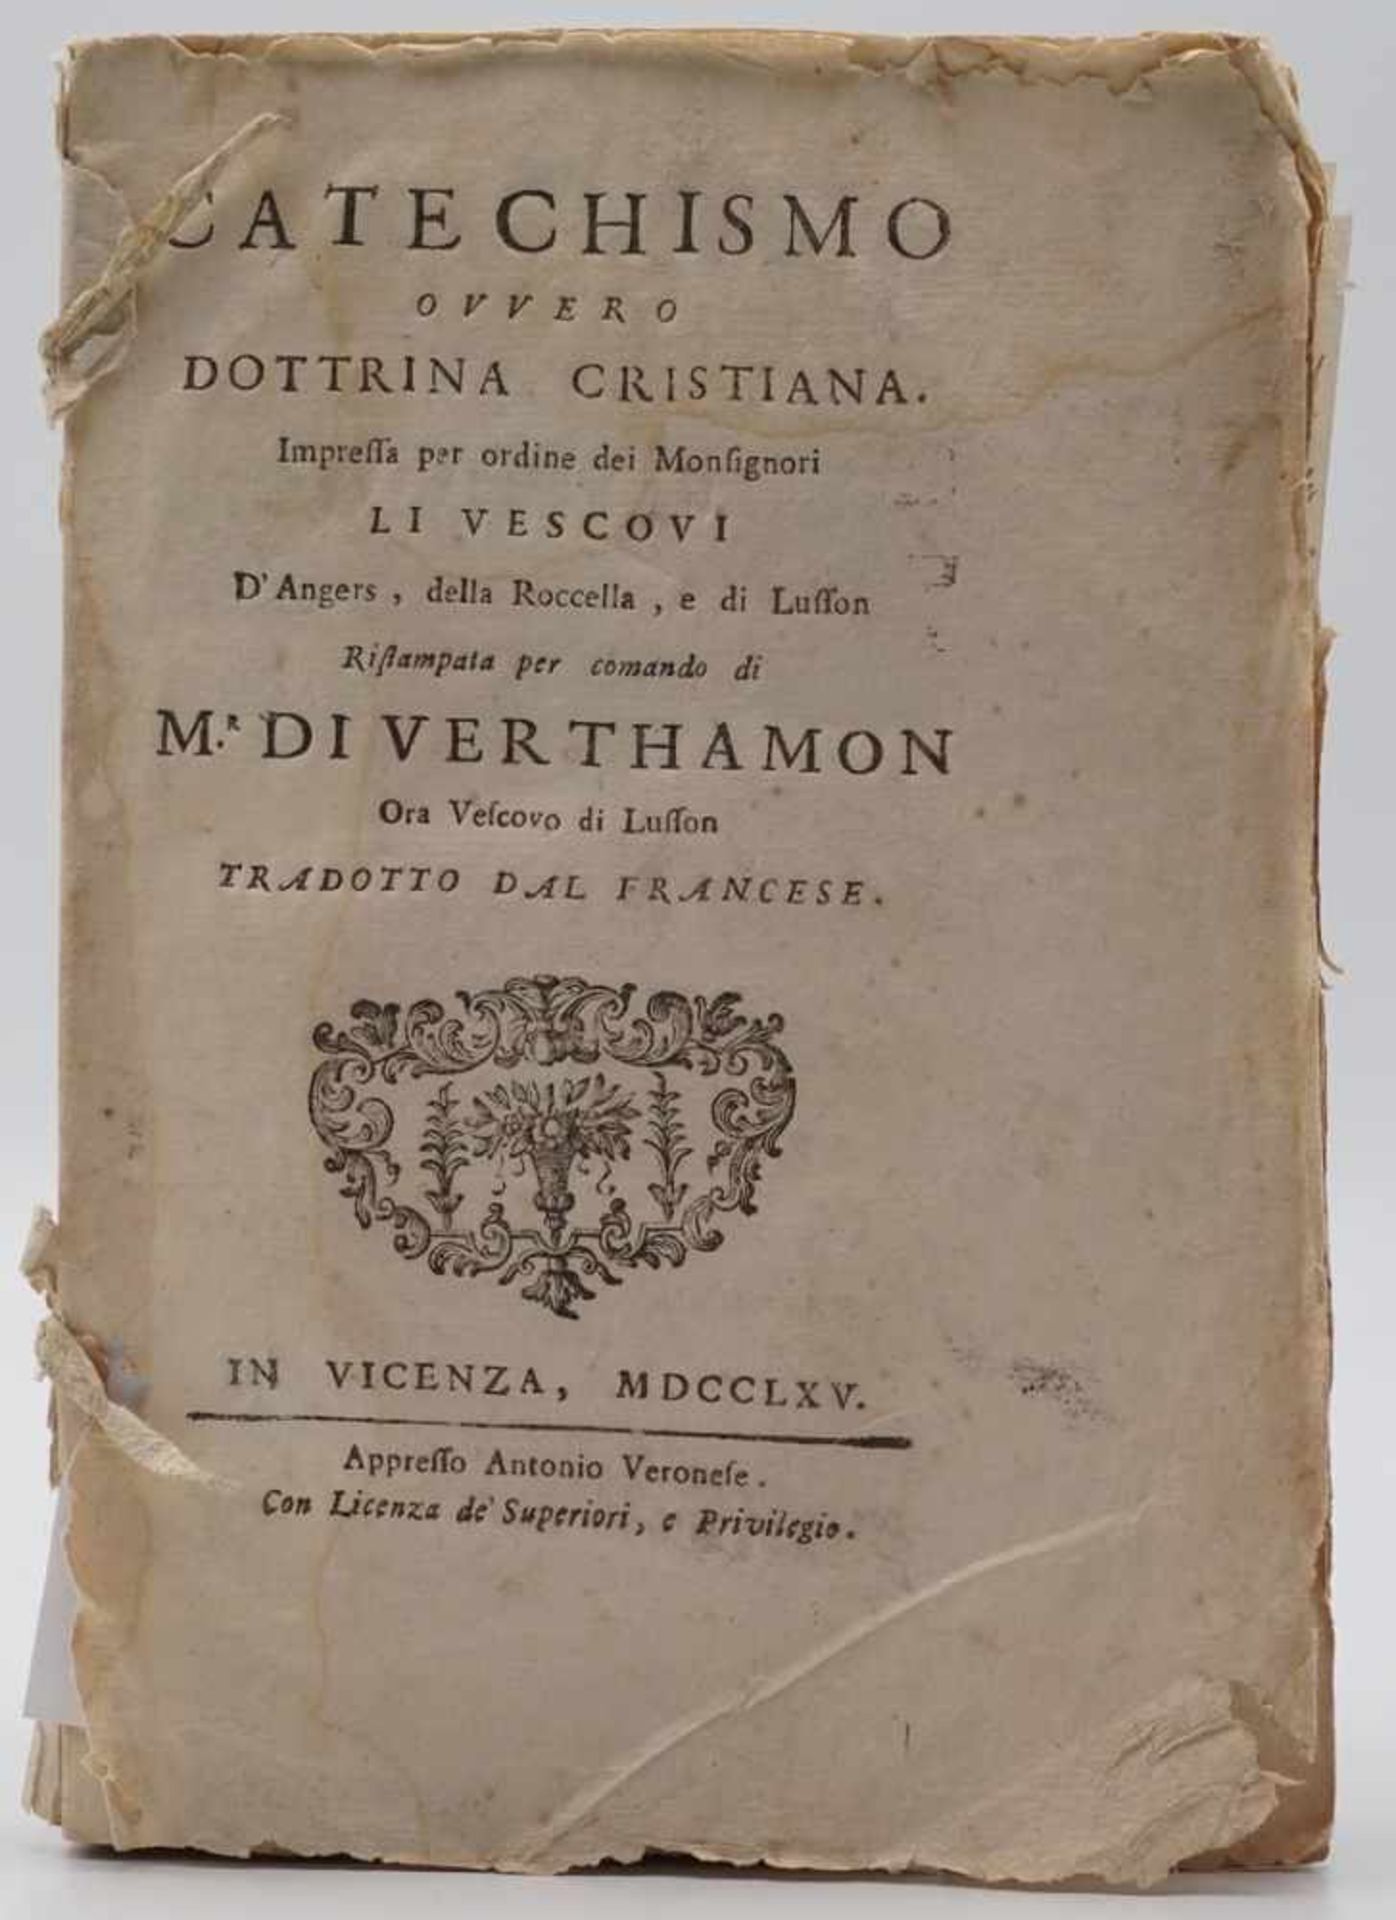 Sechs Bücher von 1633 bis 18141) "Catechismo Ovvero Dottrina Cristiana", 1765, Einband fehlt, 260 - Image 2 of 7